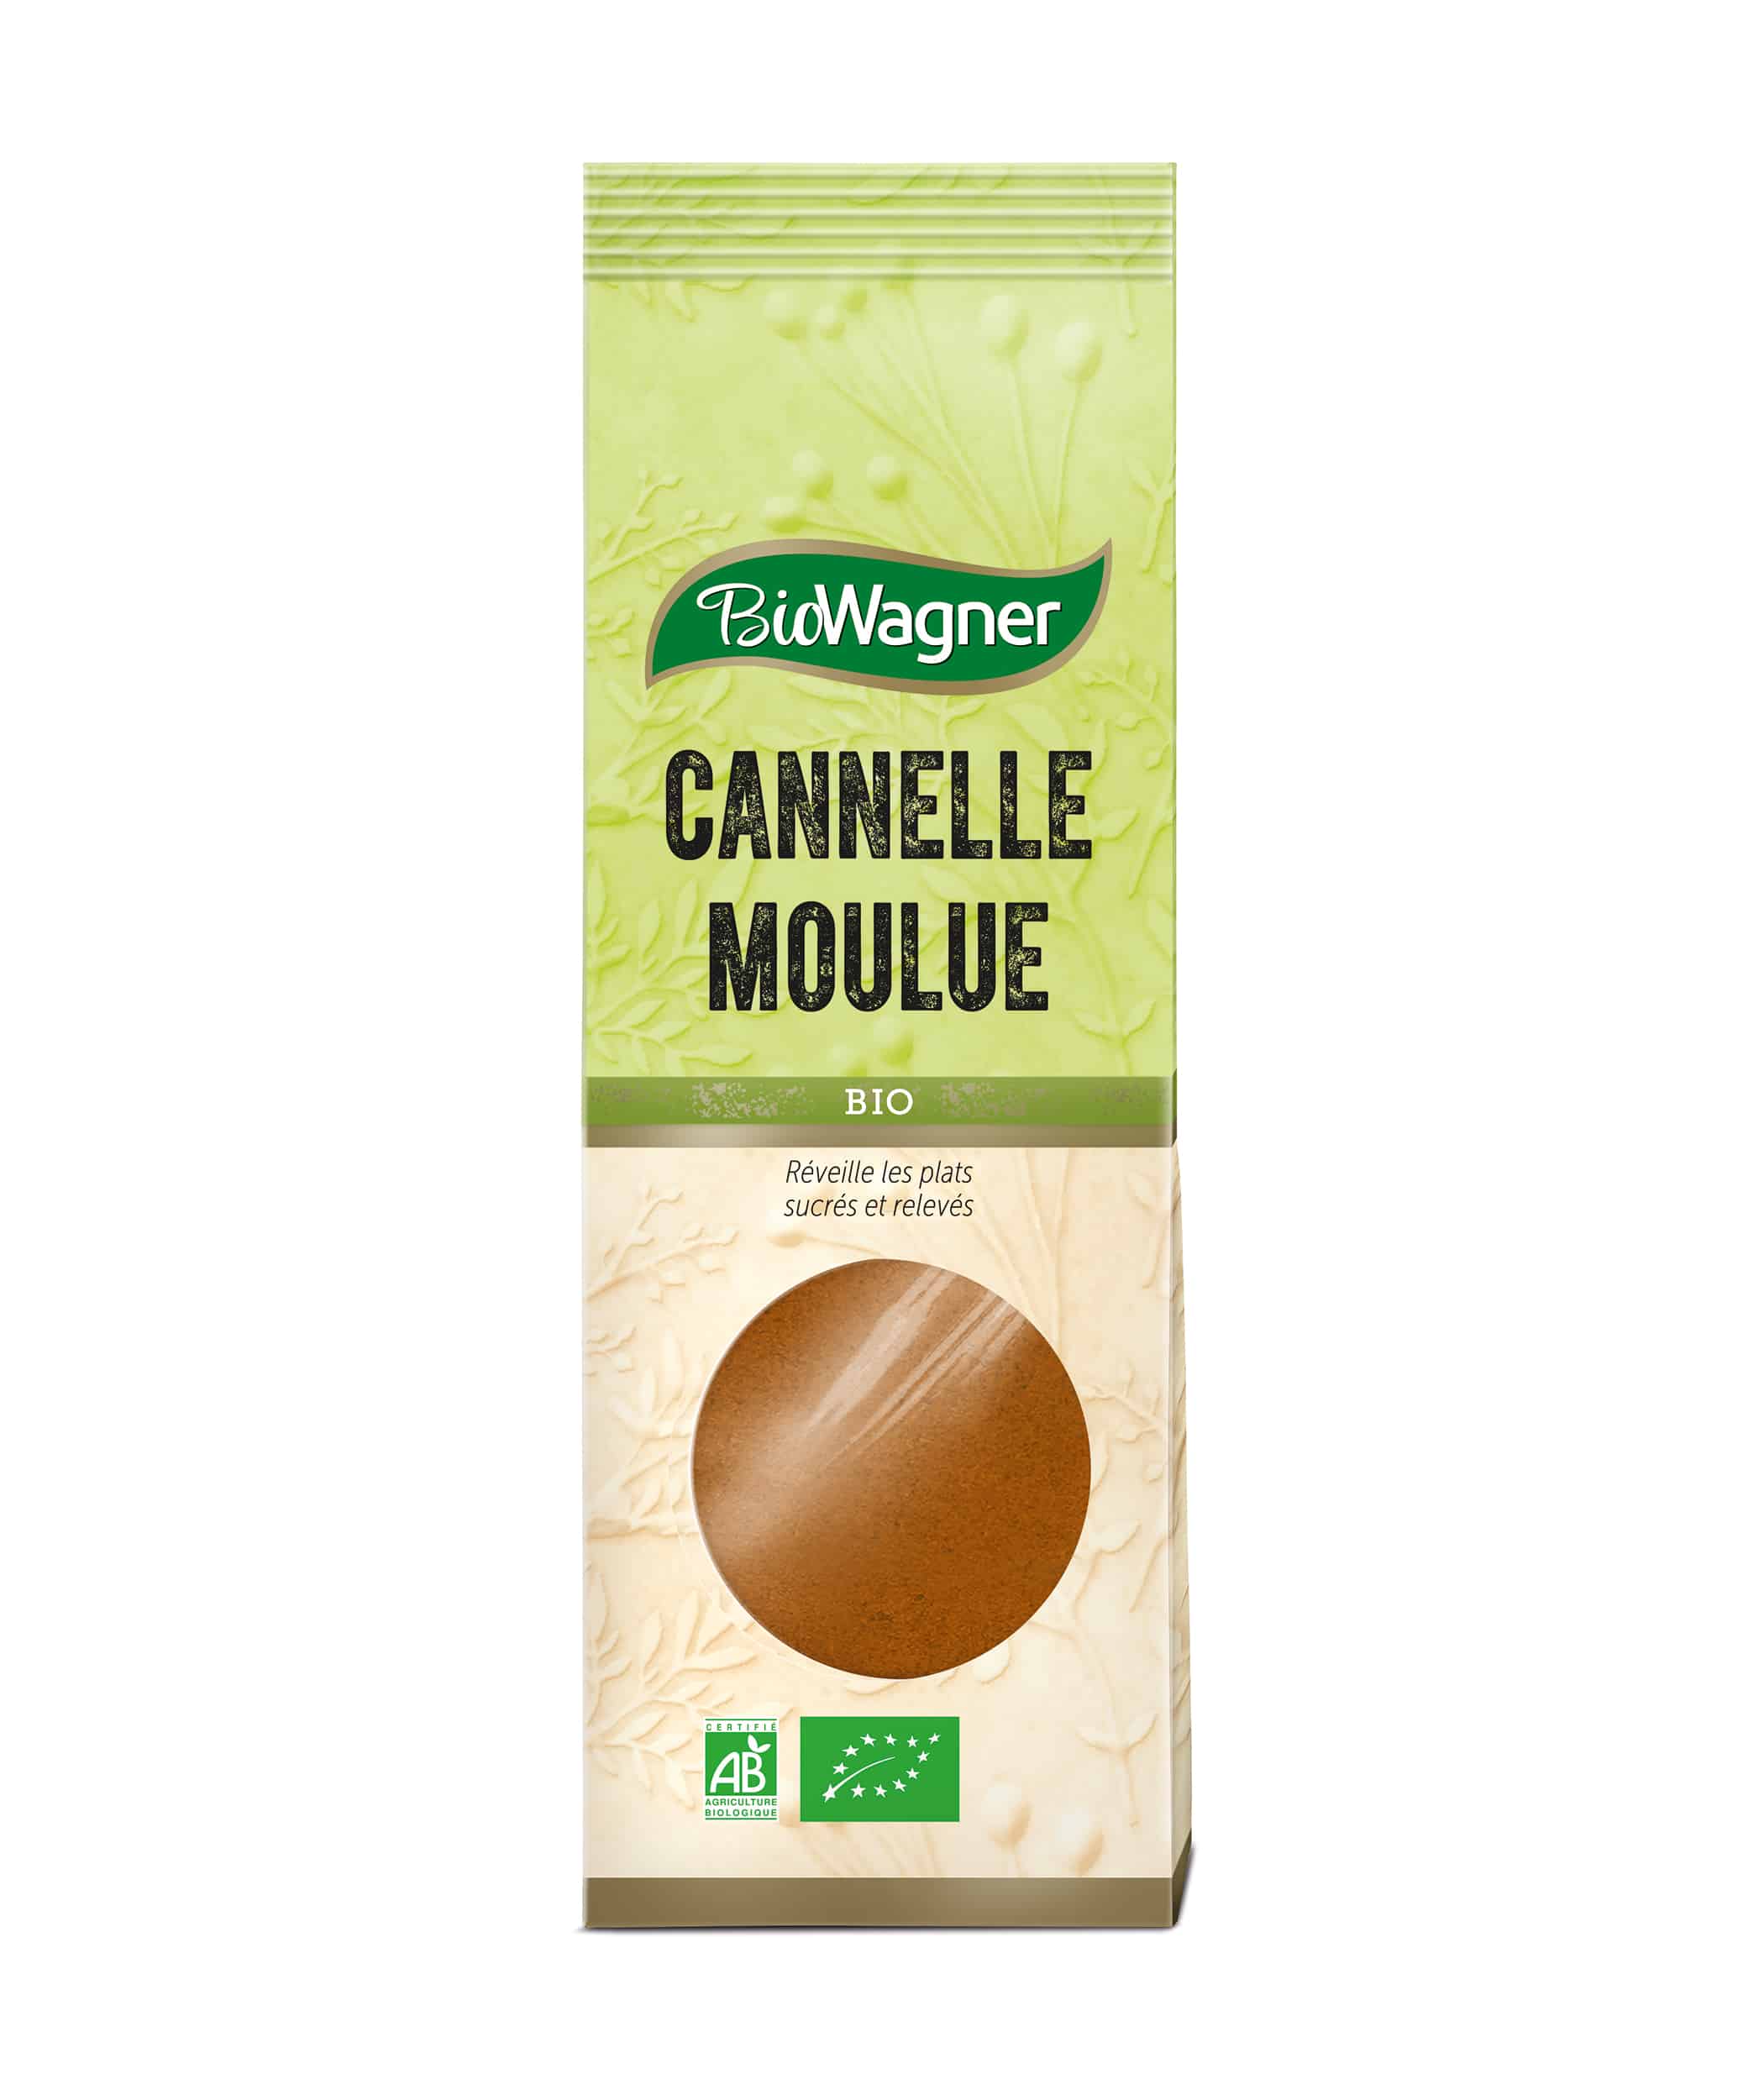 Cannelle moulue